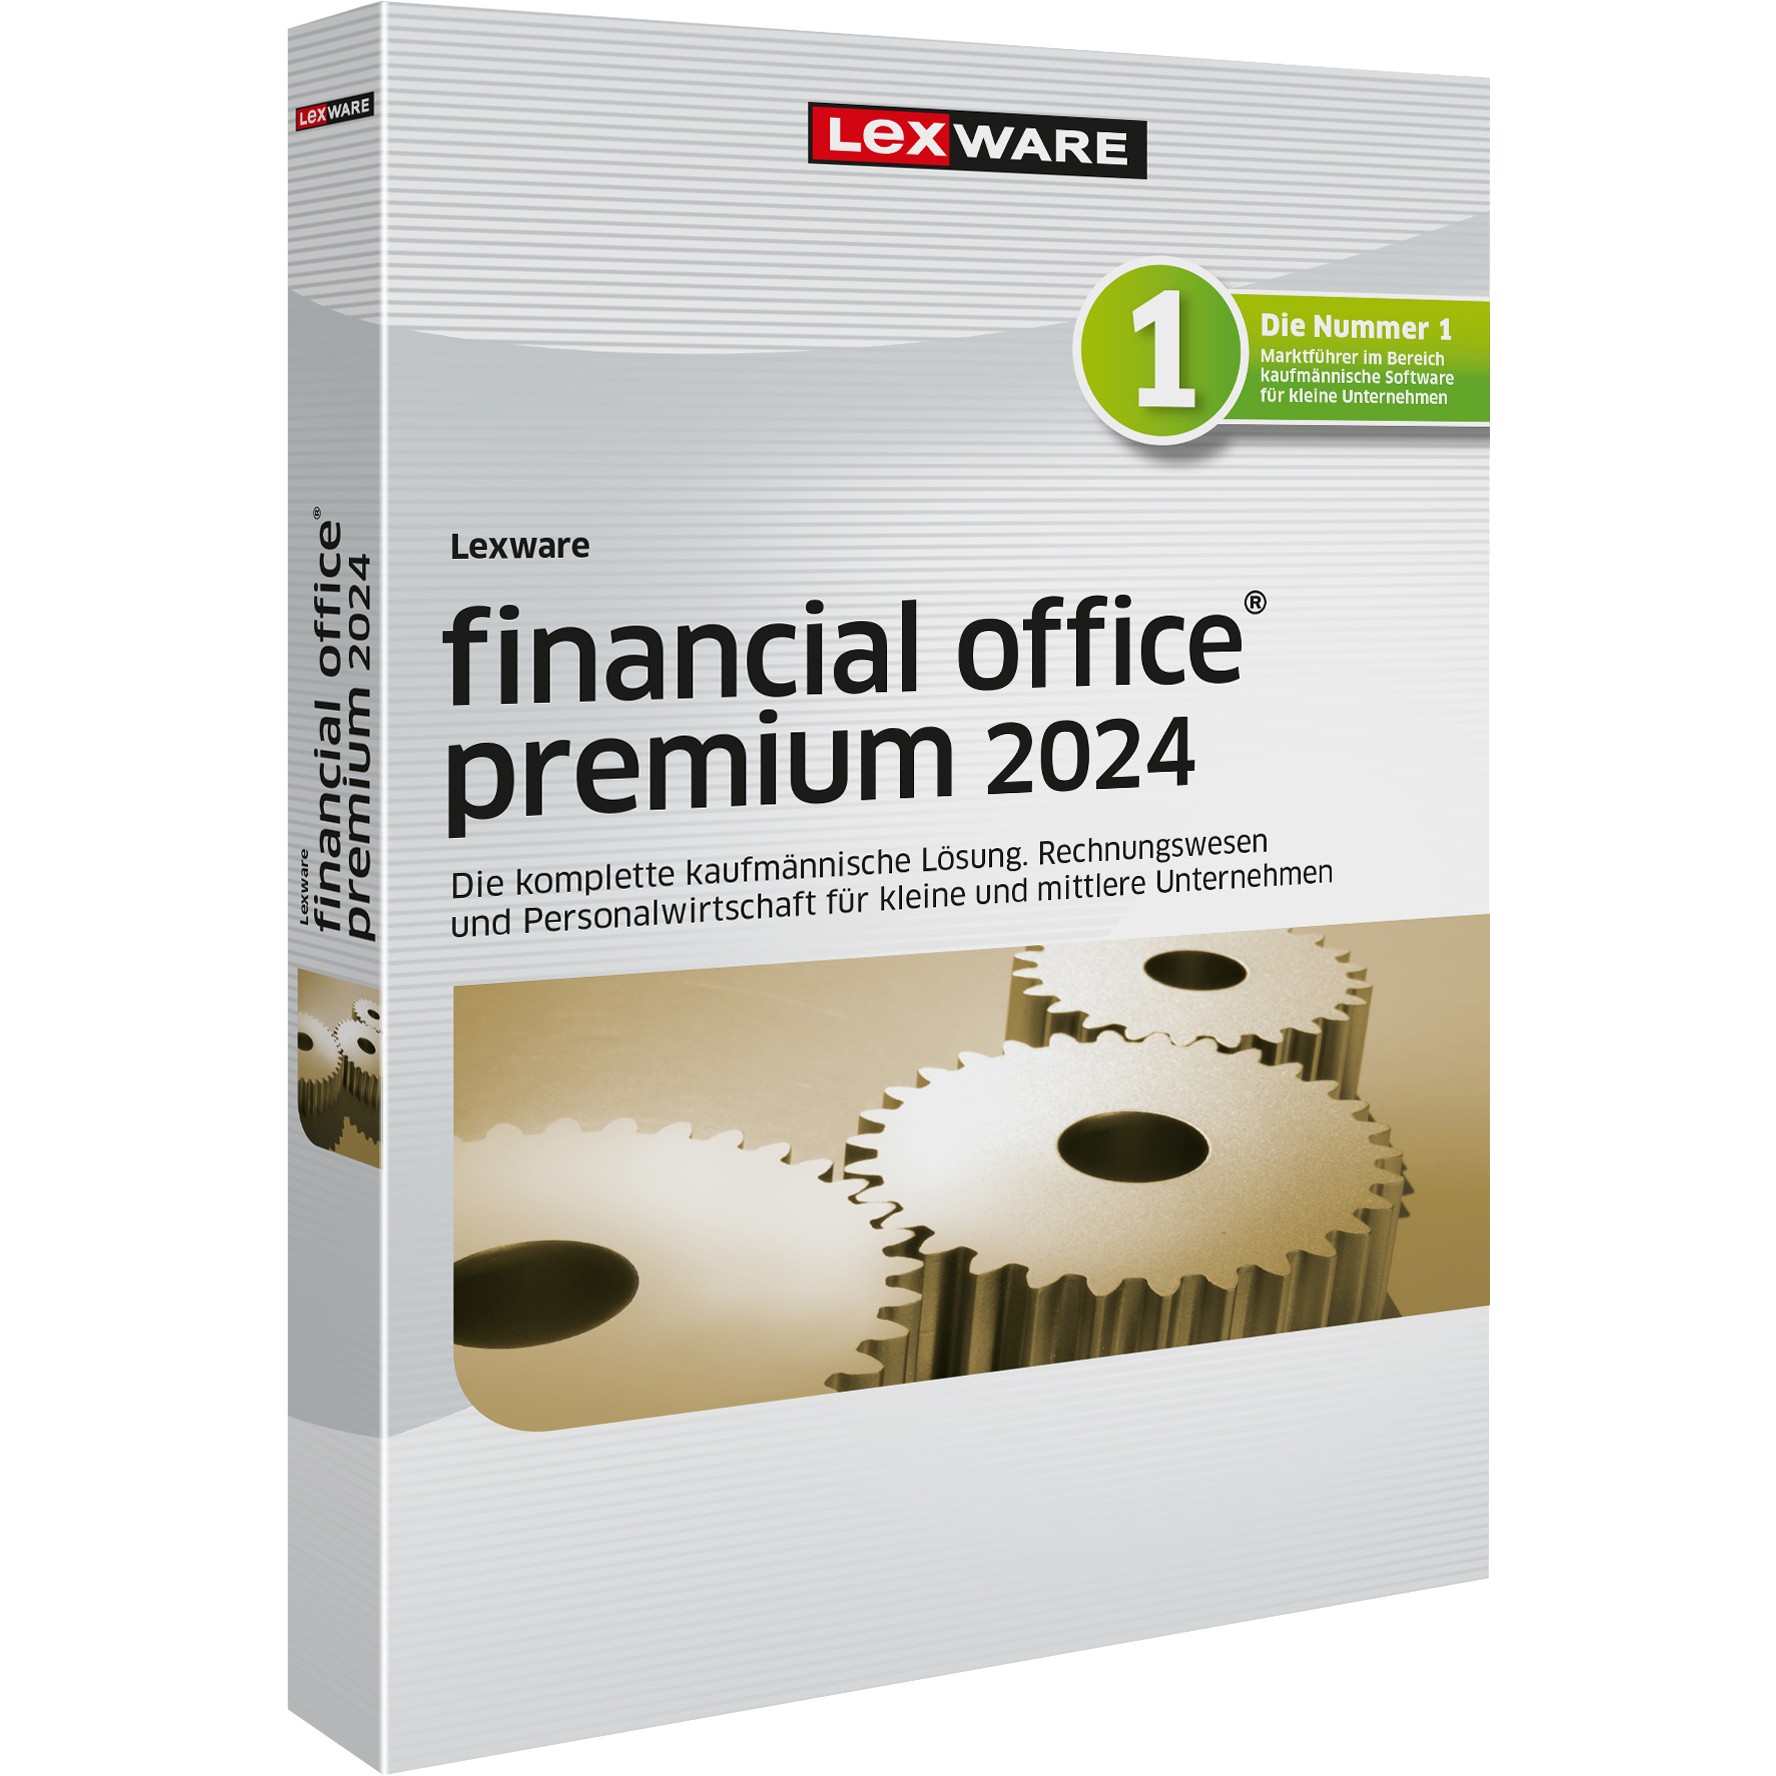 LEXWARE financial office premium handwerk 2024 - Abo [Download]